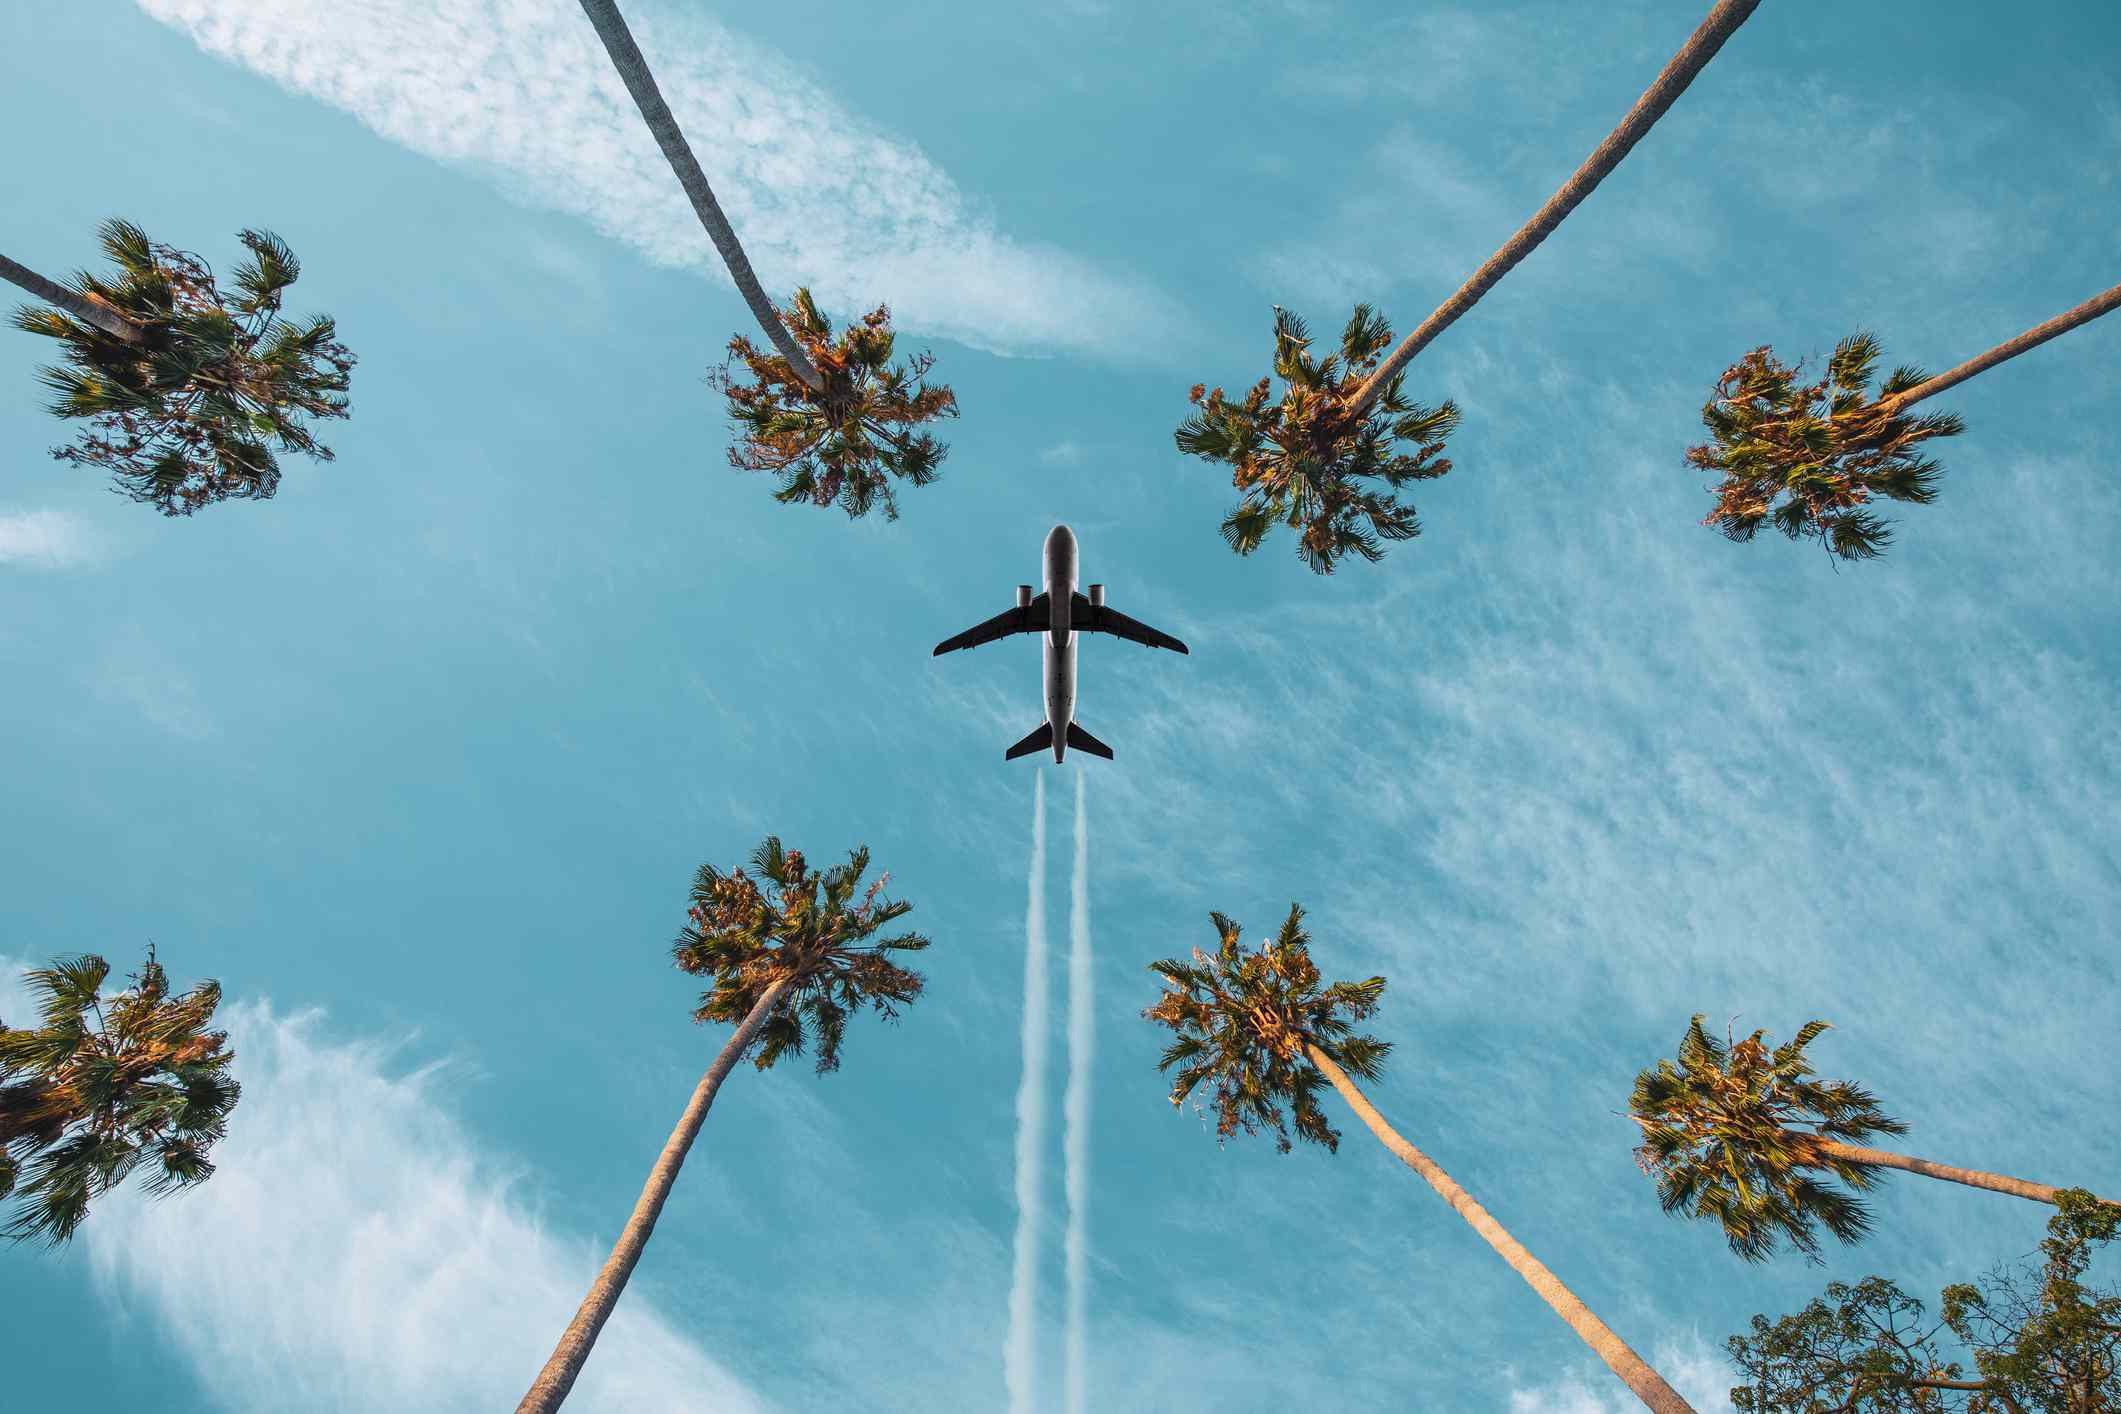 Avión volando por encima de las palmeras, dejando estelas de vapor